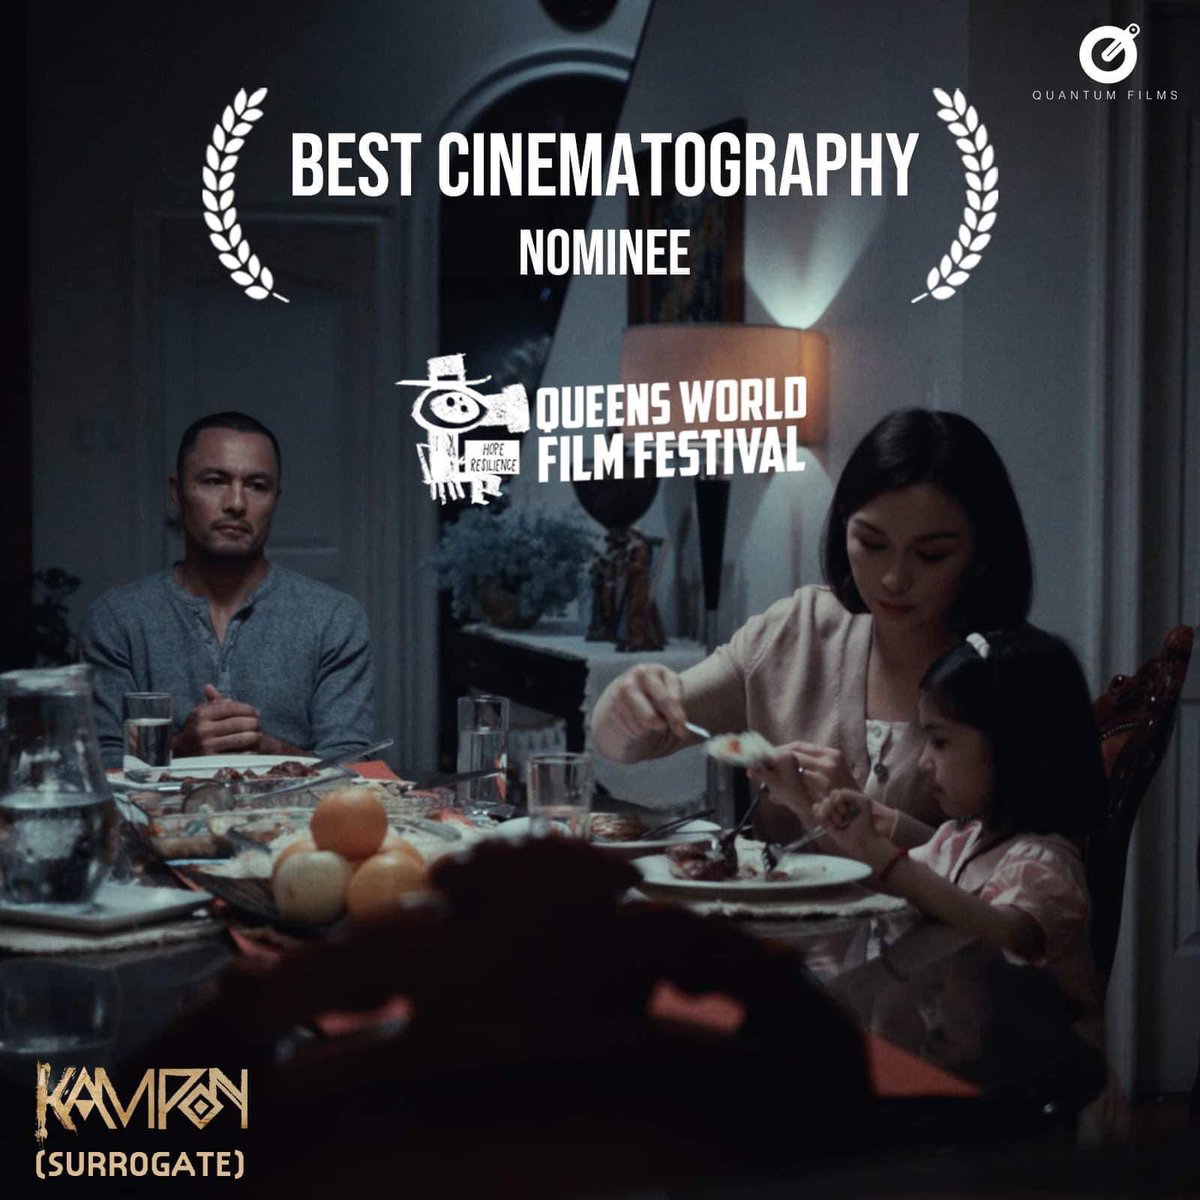 Ito na, Queens World Film Festival nominations are out! Nakatanggap ang #Kampon ng 3 nominations including Best Narrative Film. Congrats, Team Kampon!🔥